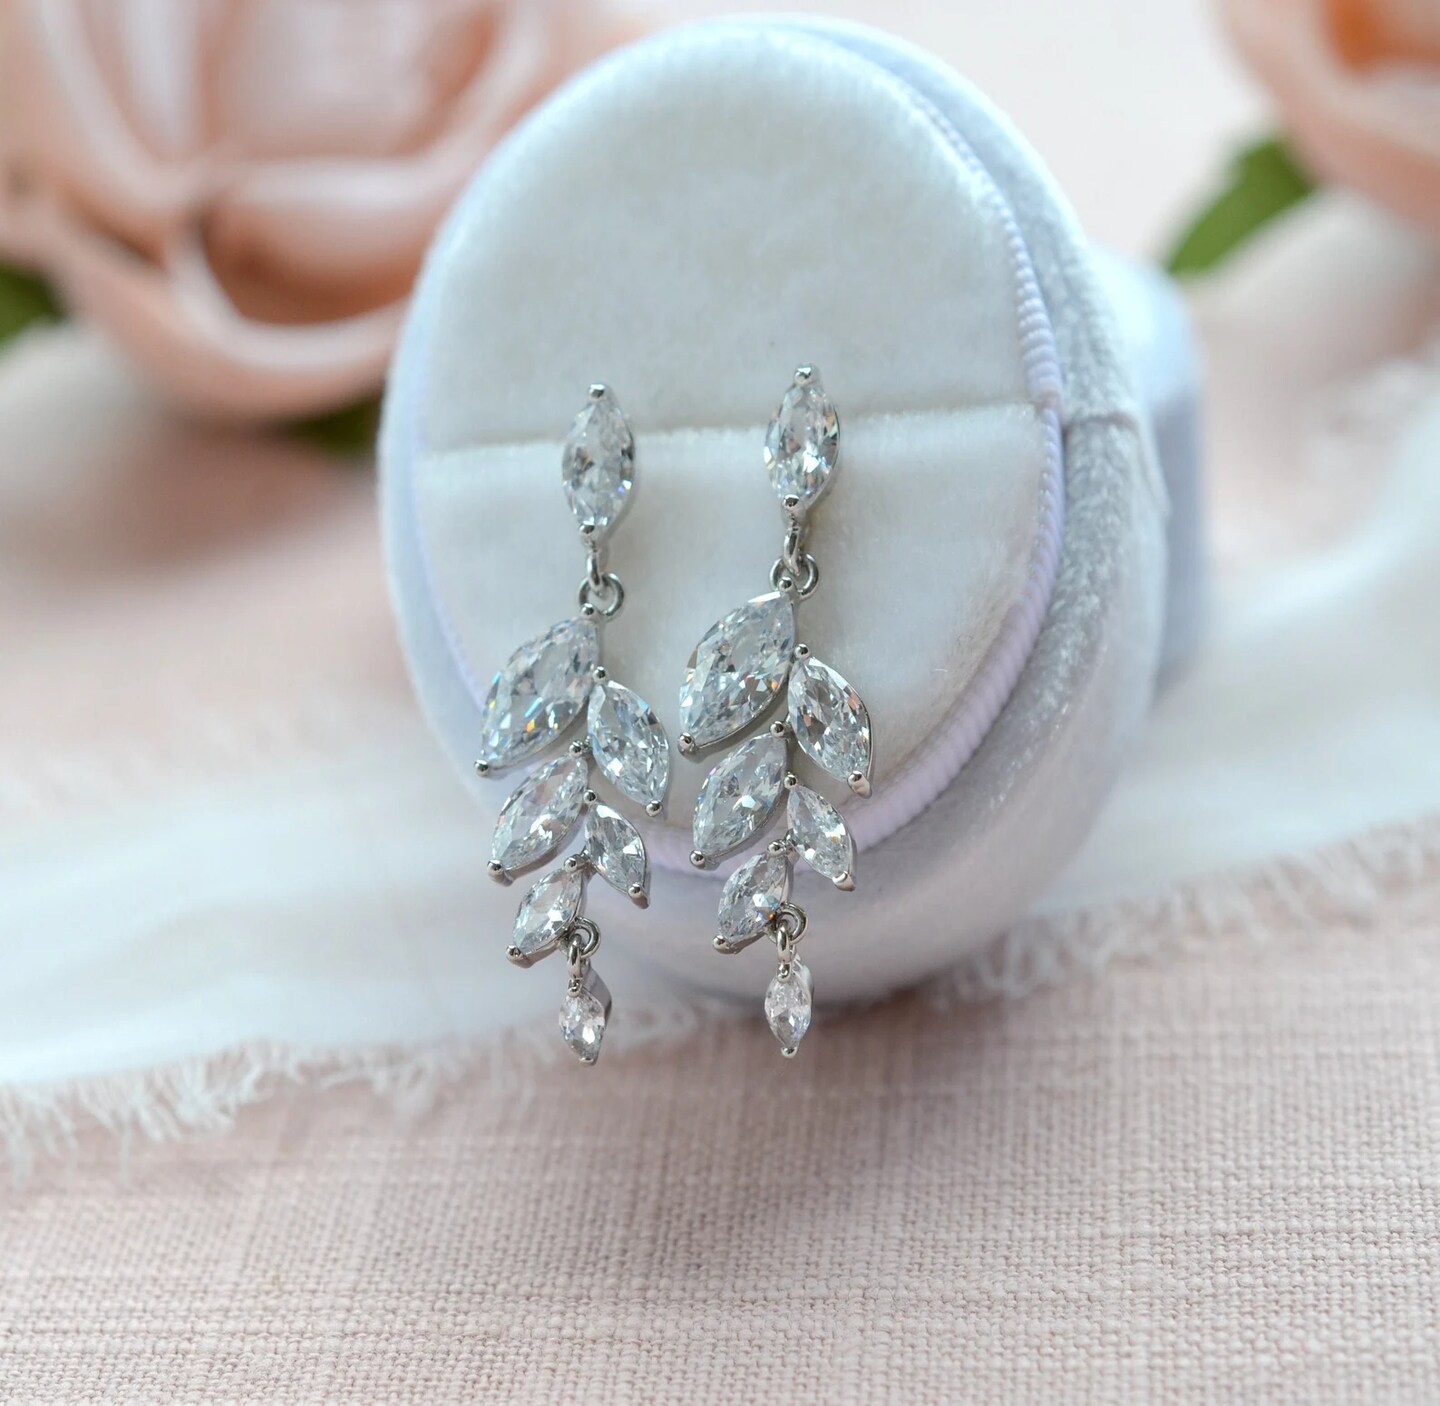 Buy Swarovski Crystal Earrings, Crystal Teardrop Earrings, Crystal Drop  Earrings, Wedding Earrings, Crystal Bridal Earrings, Cz Drop Earrings  Online in India - Etsy